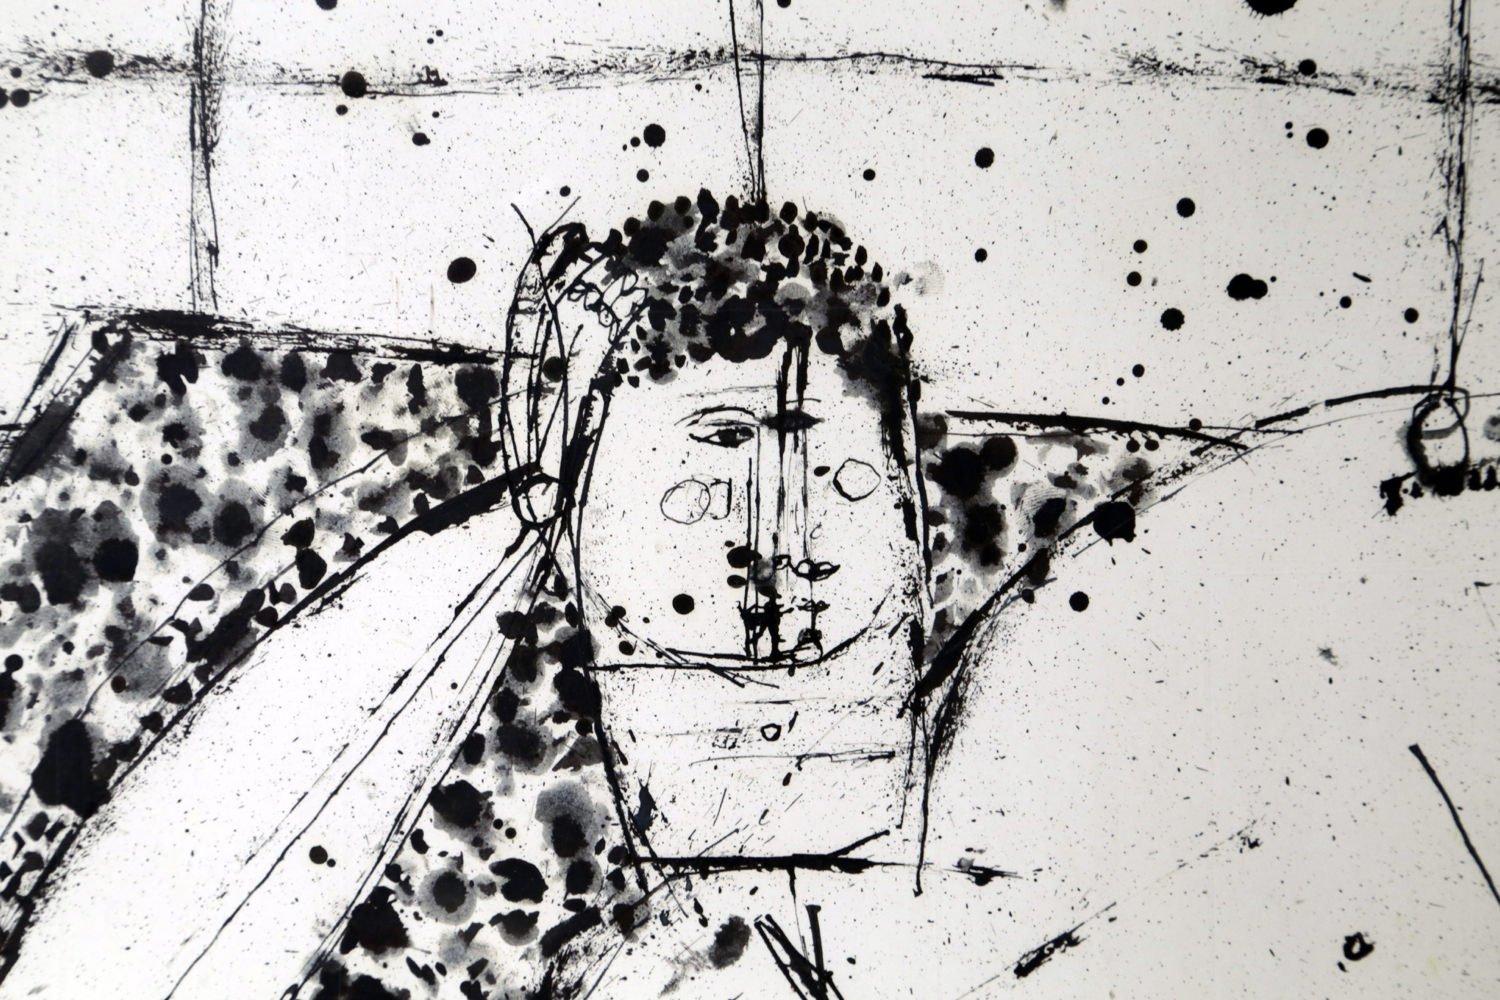 Liegende nackte männliche Figur, figurale expressionistische New Yorker Künstlerin mit Tuschezeichnung (Abstrakter Expressionismus), Art, von Joseph Glasco